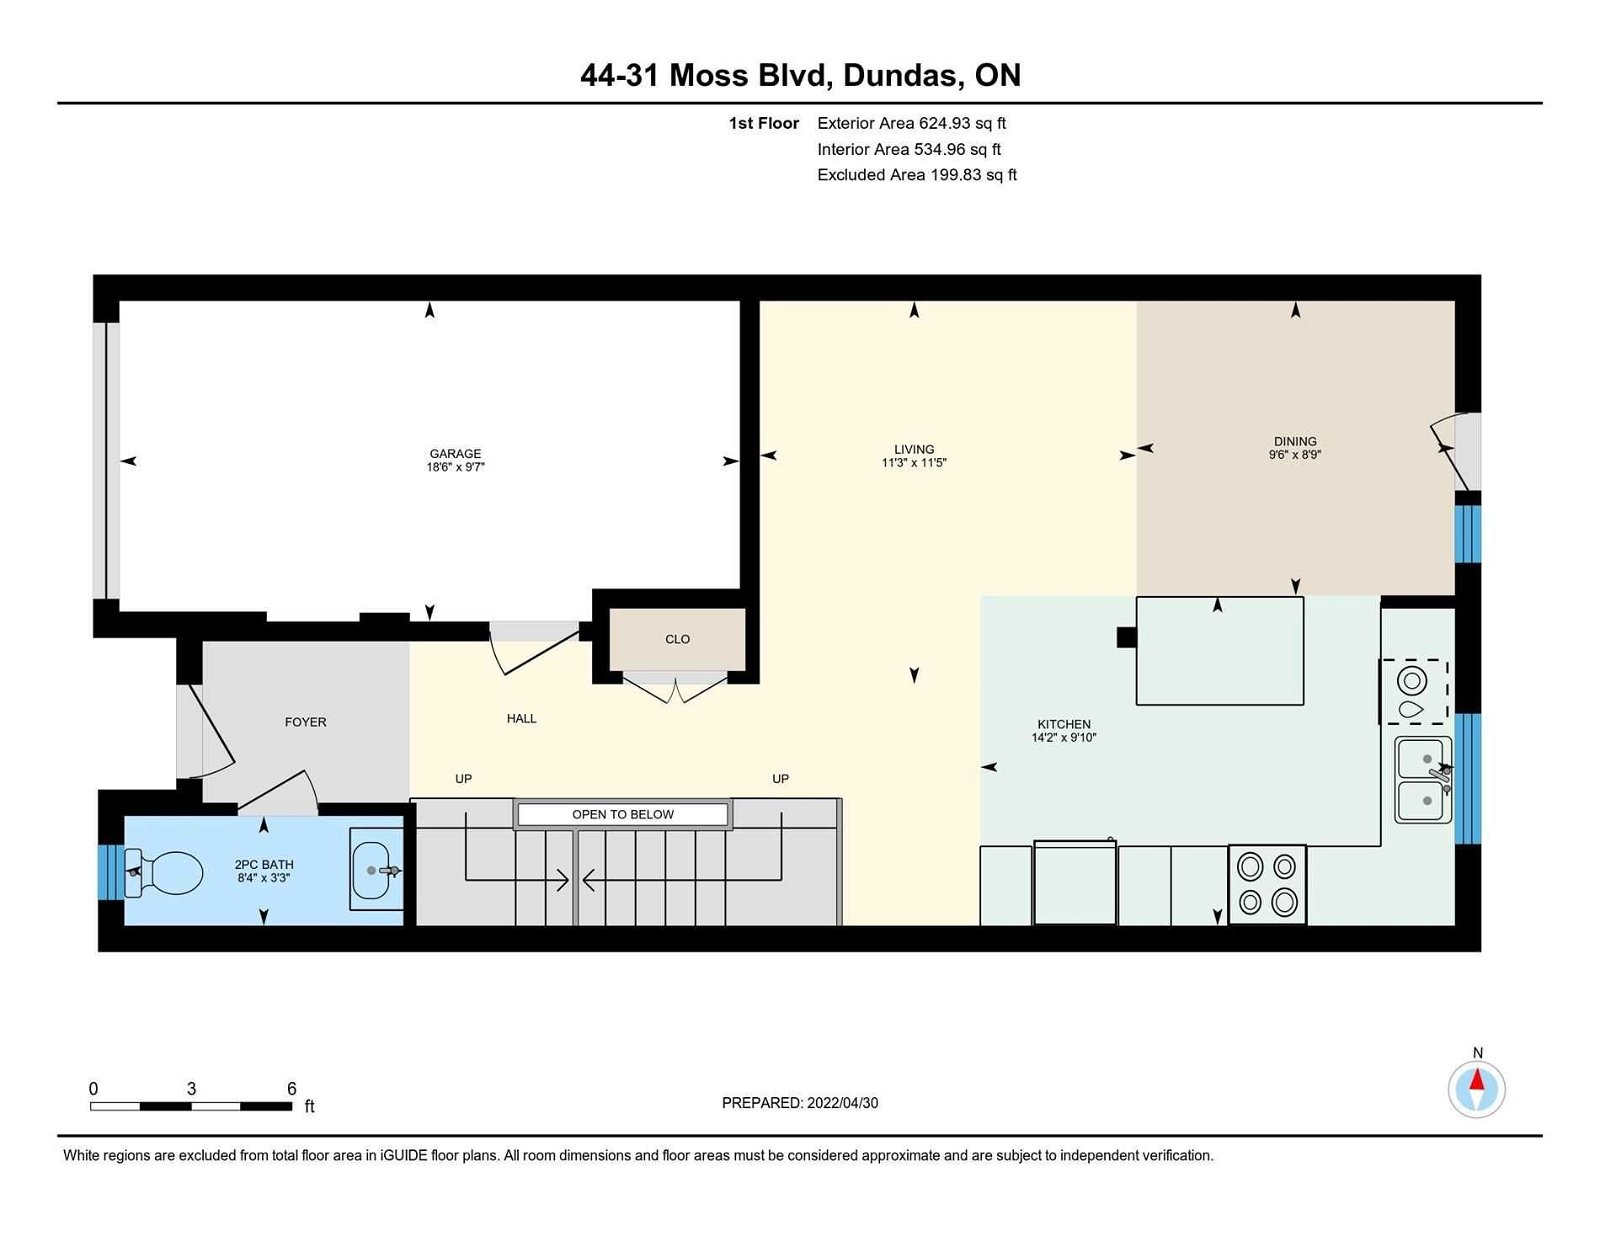 31 Moss Blvd, unit 44 for sale - image #31